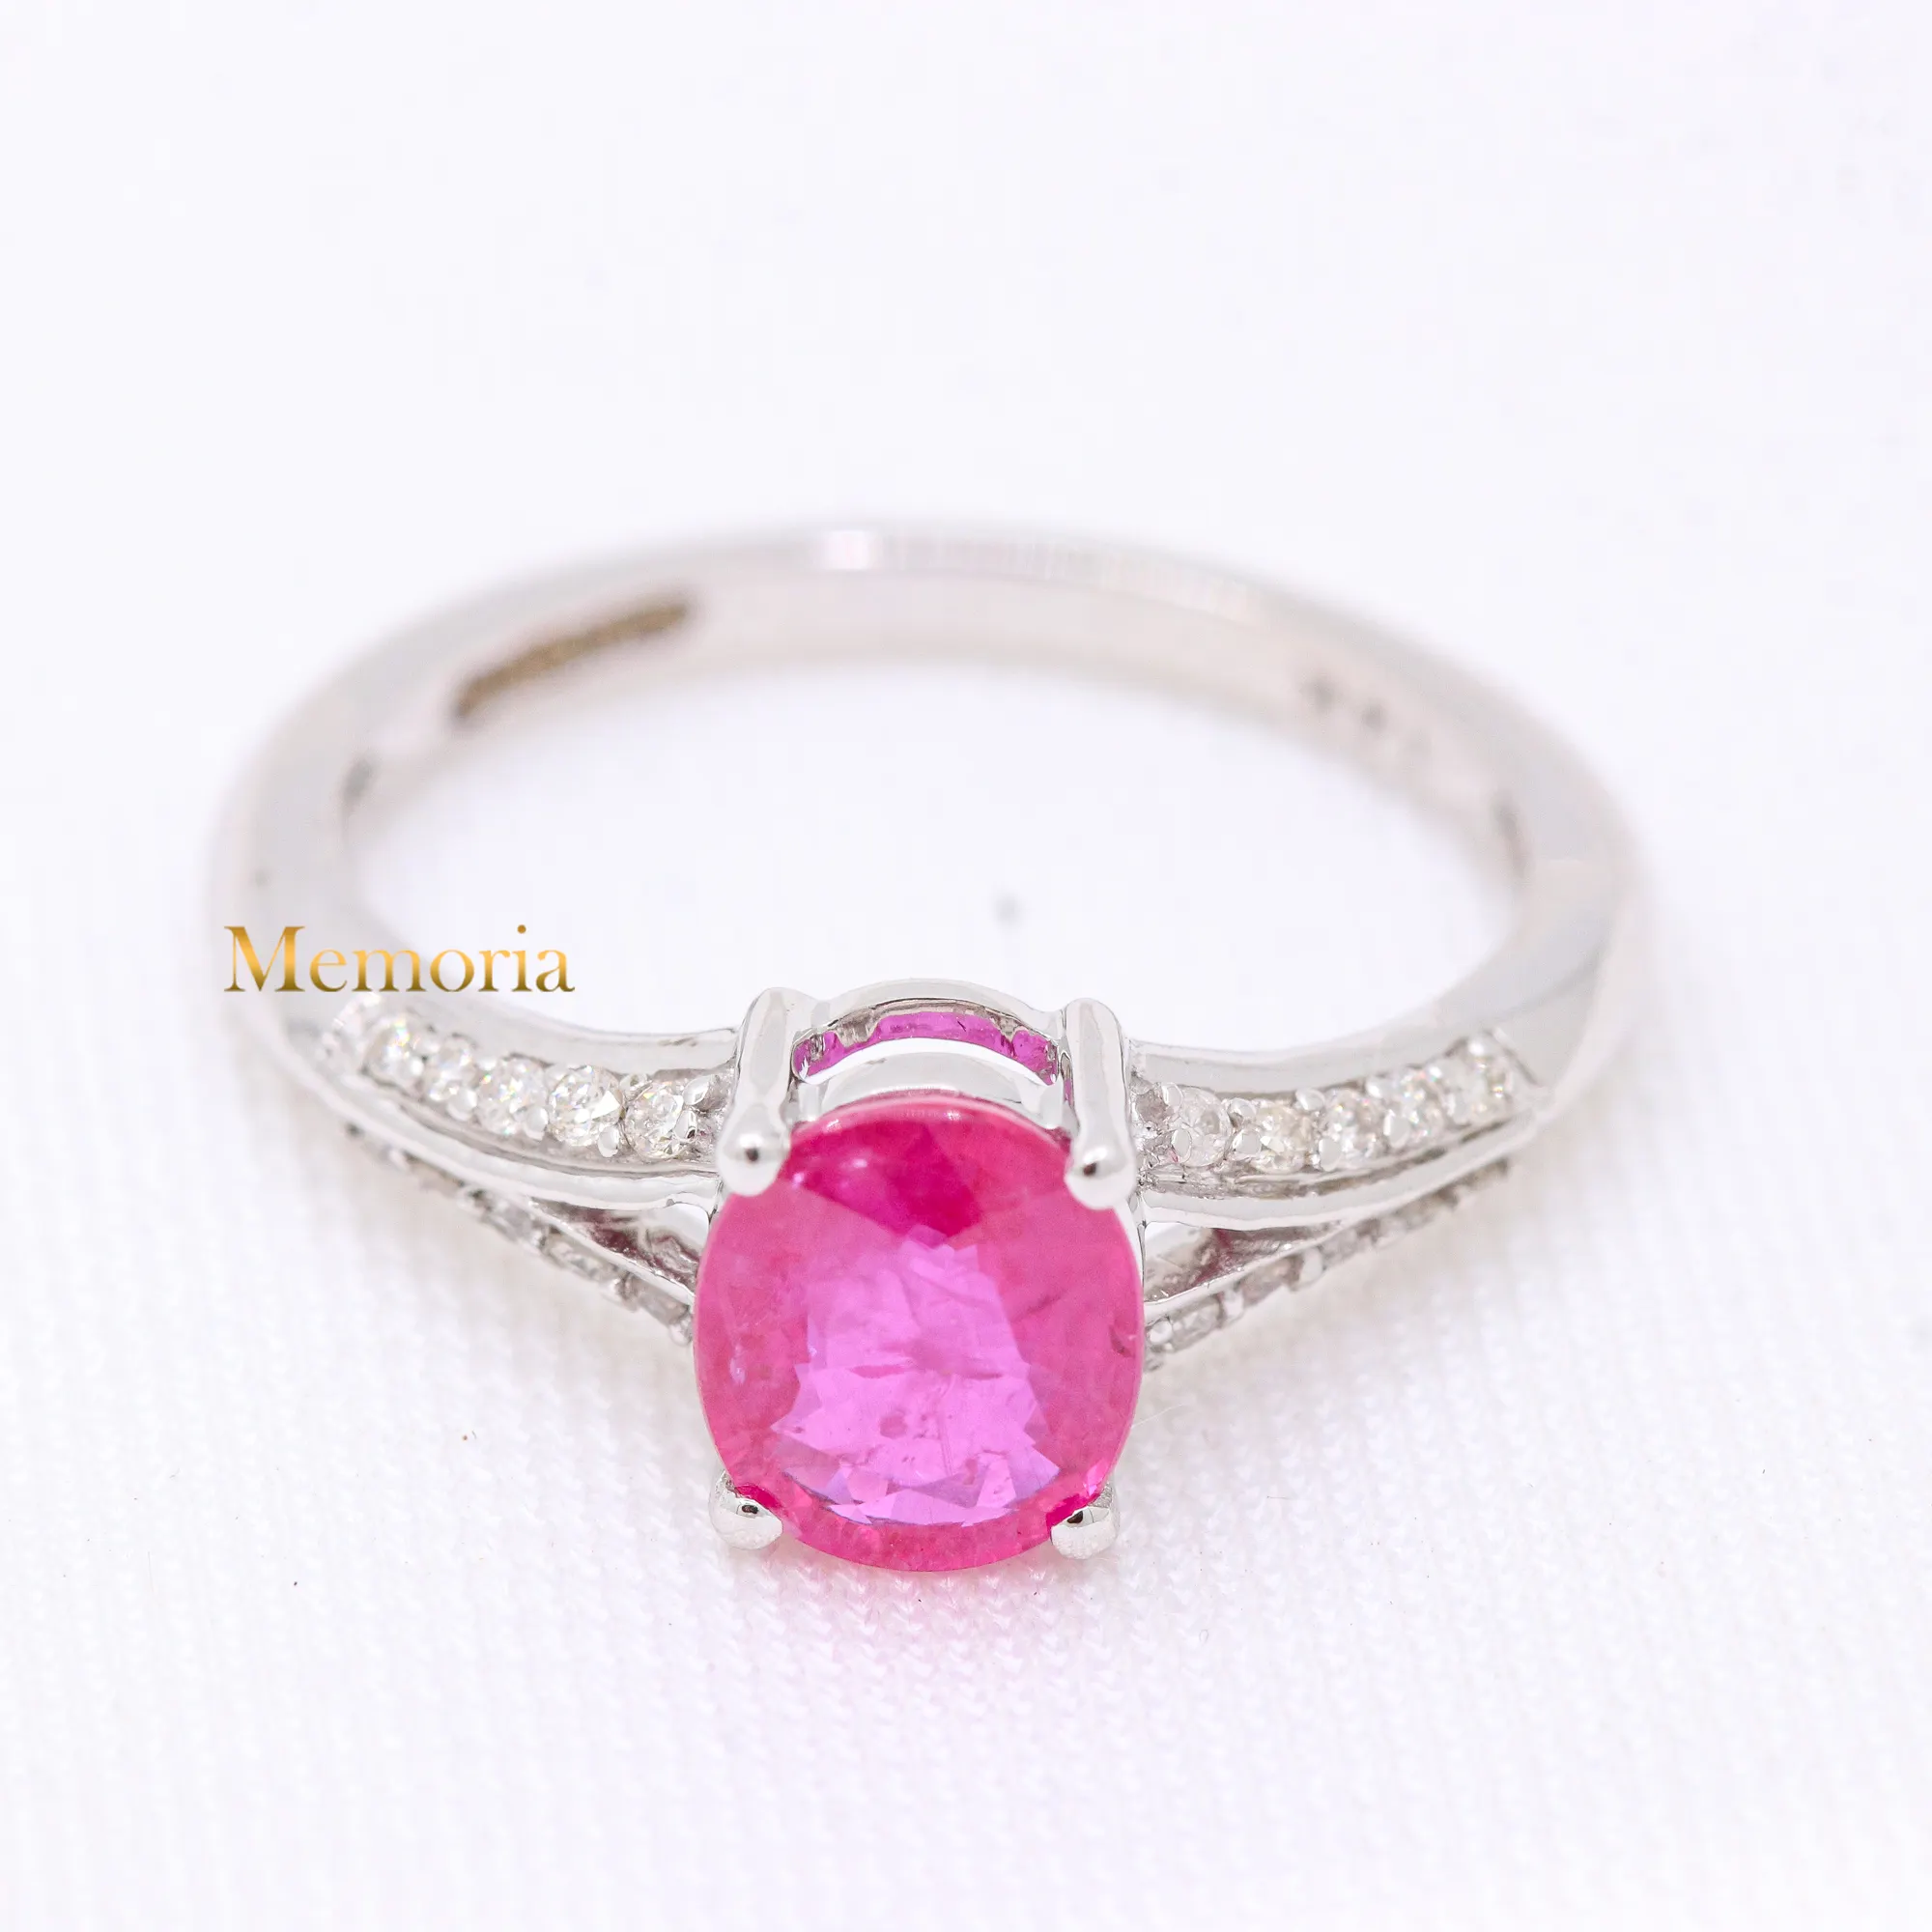 Di alta qualità gemma 14k oro bianco anello di forma ovale rubino naturale e anello di diamanti per le donne Birthstone gioielli prezzo all'ingrosso